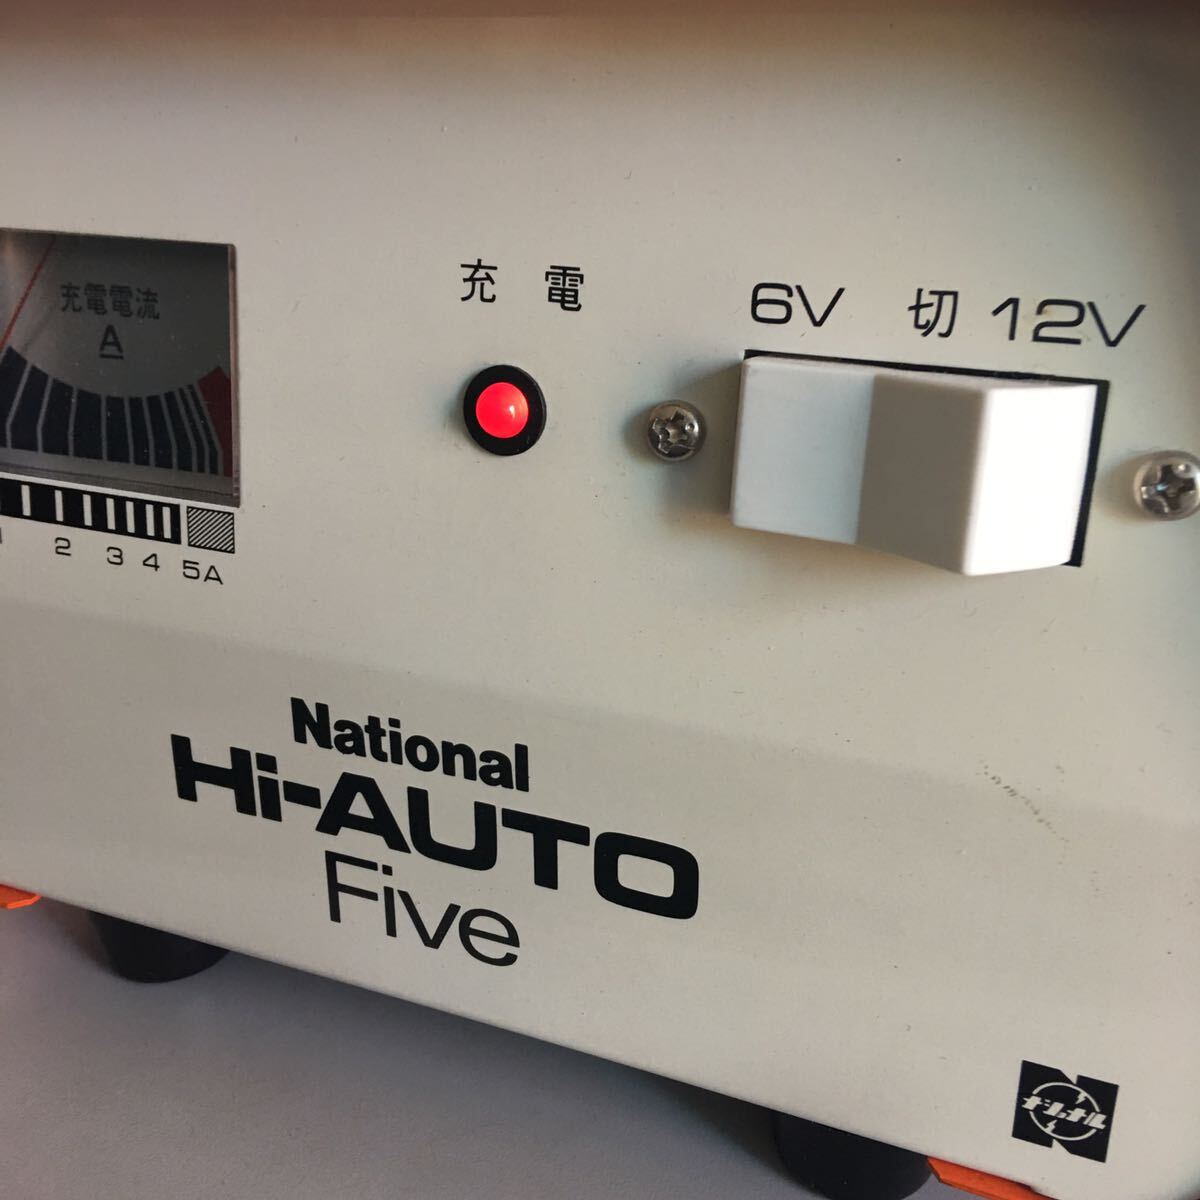 BS■ National ナショナル 小型 充電器 Hi-AUTO Five 6V 12V バッテリー 中古 _画像4